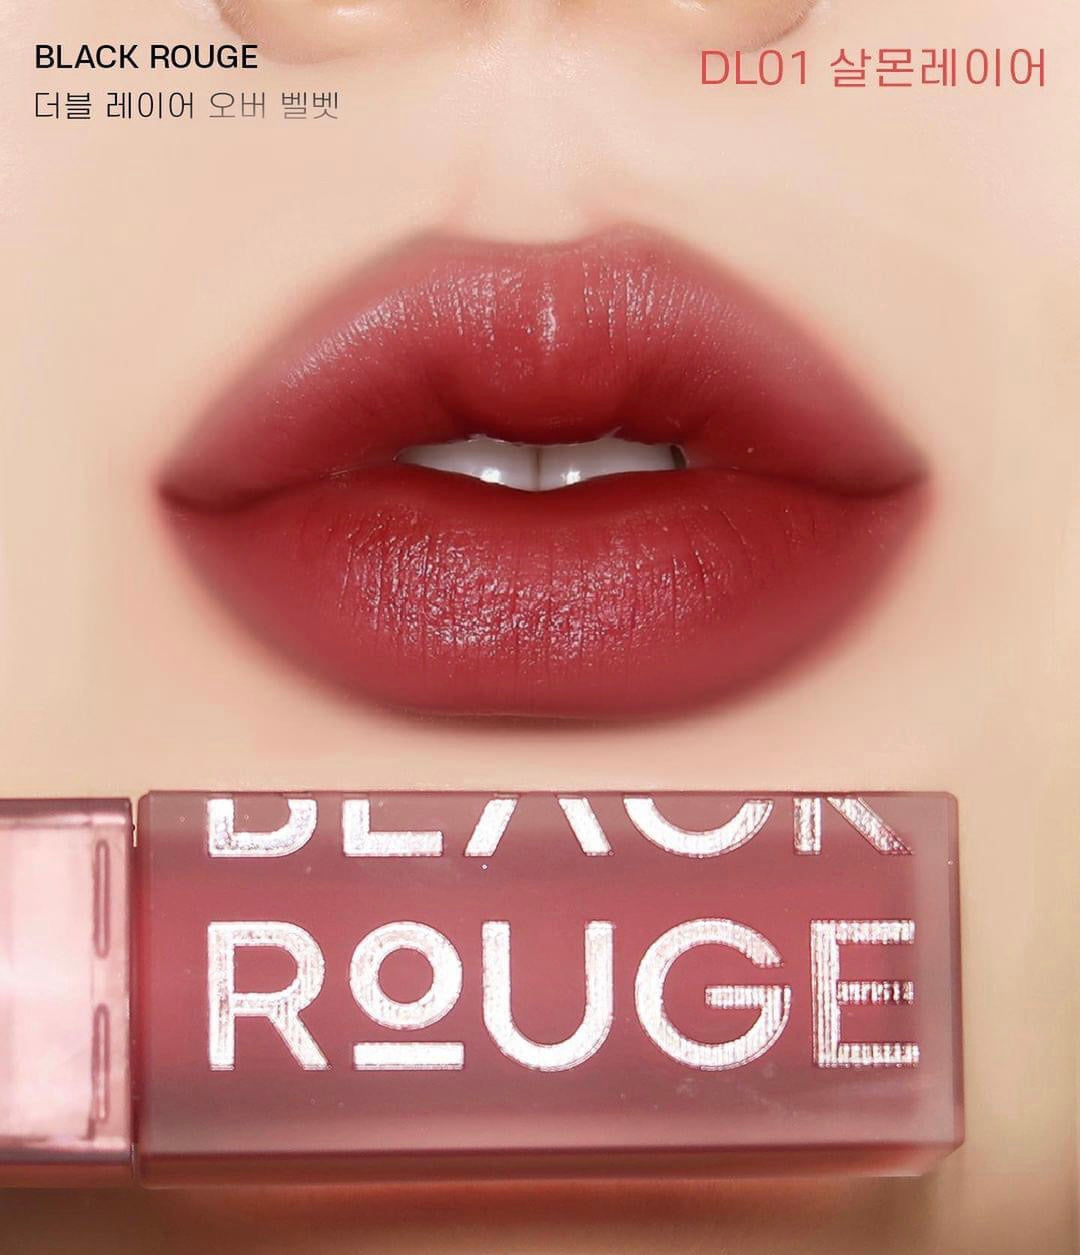 [Black Rouge] Double layer Over Velvet 4.1g